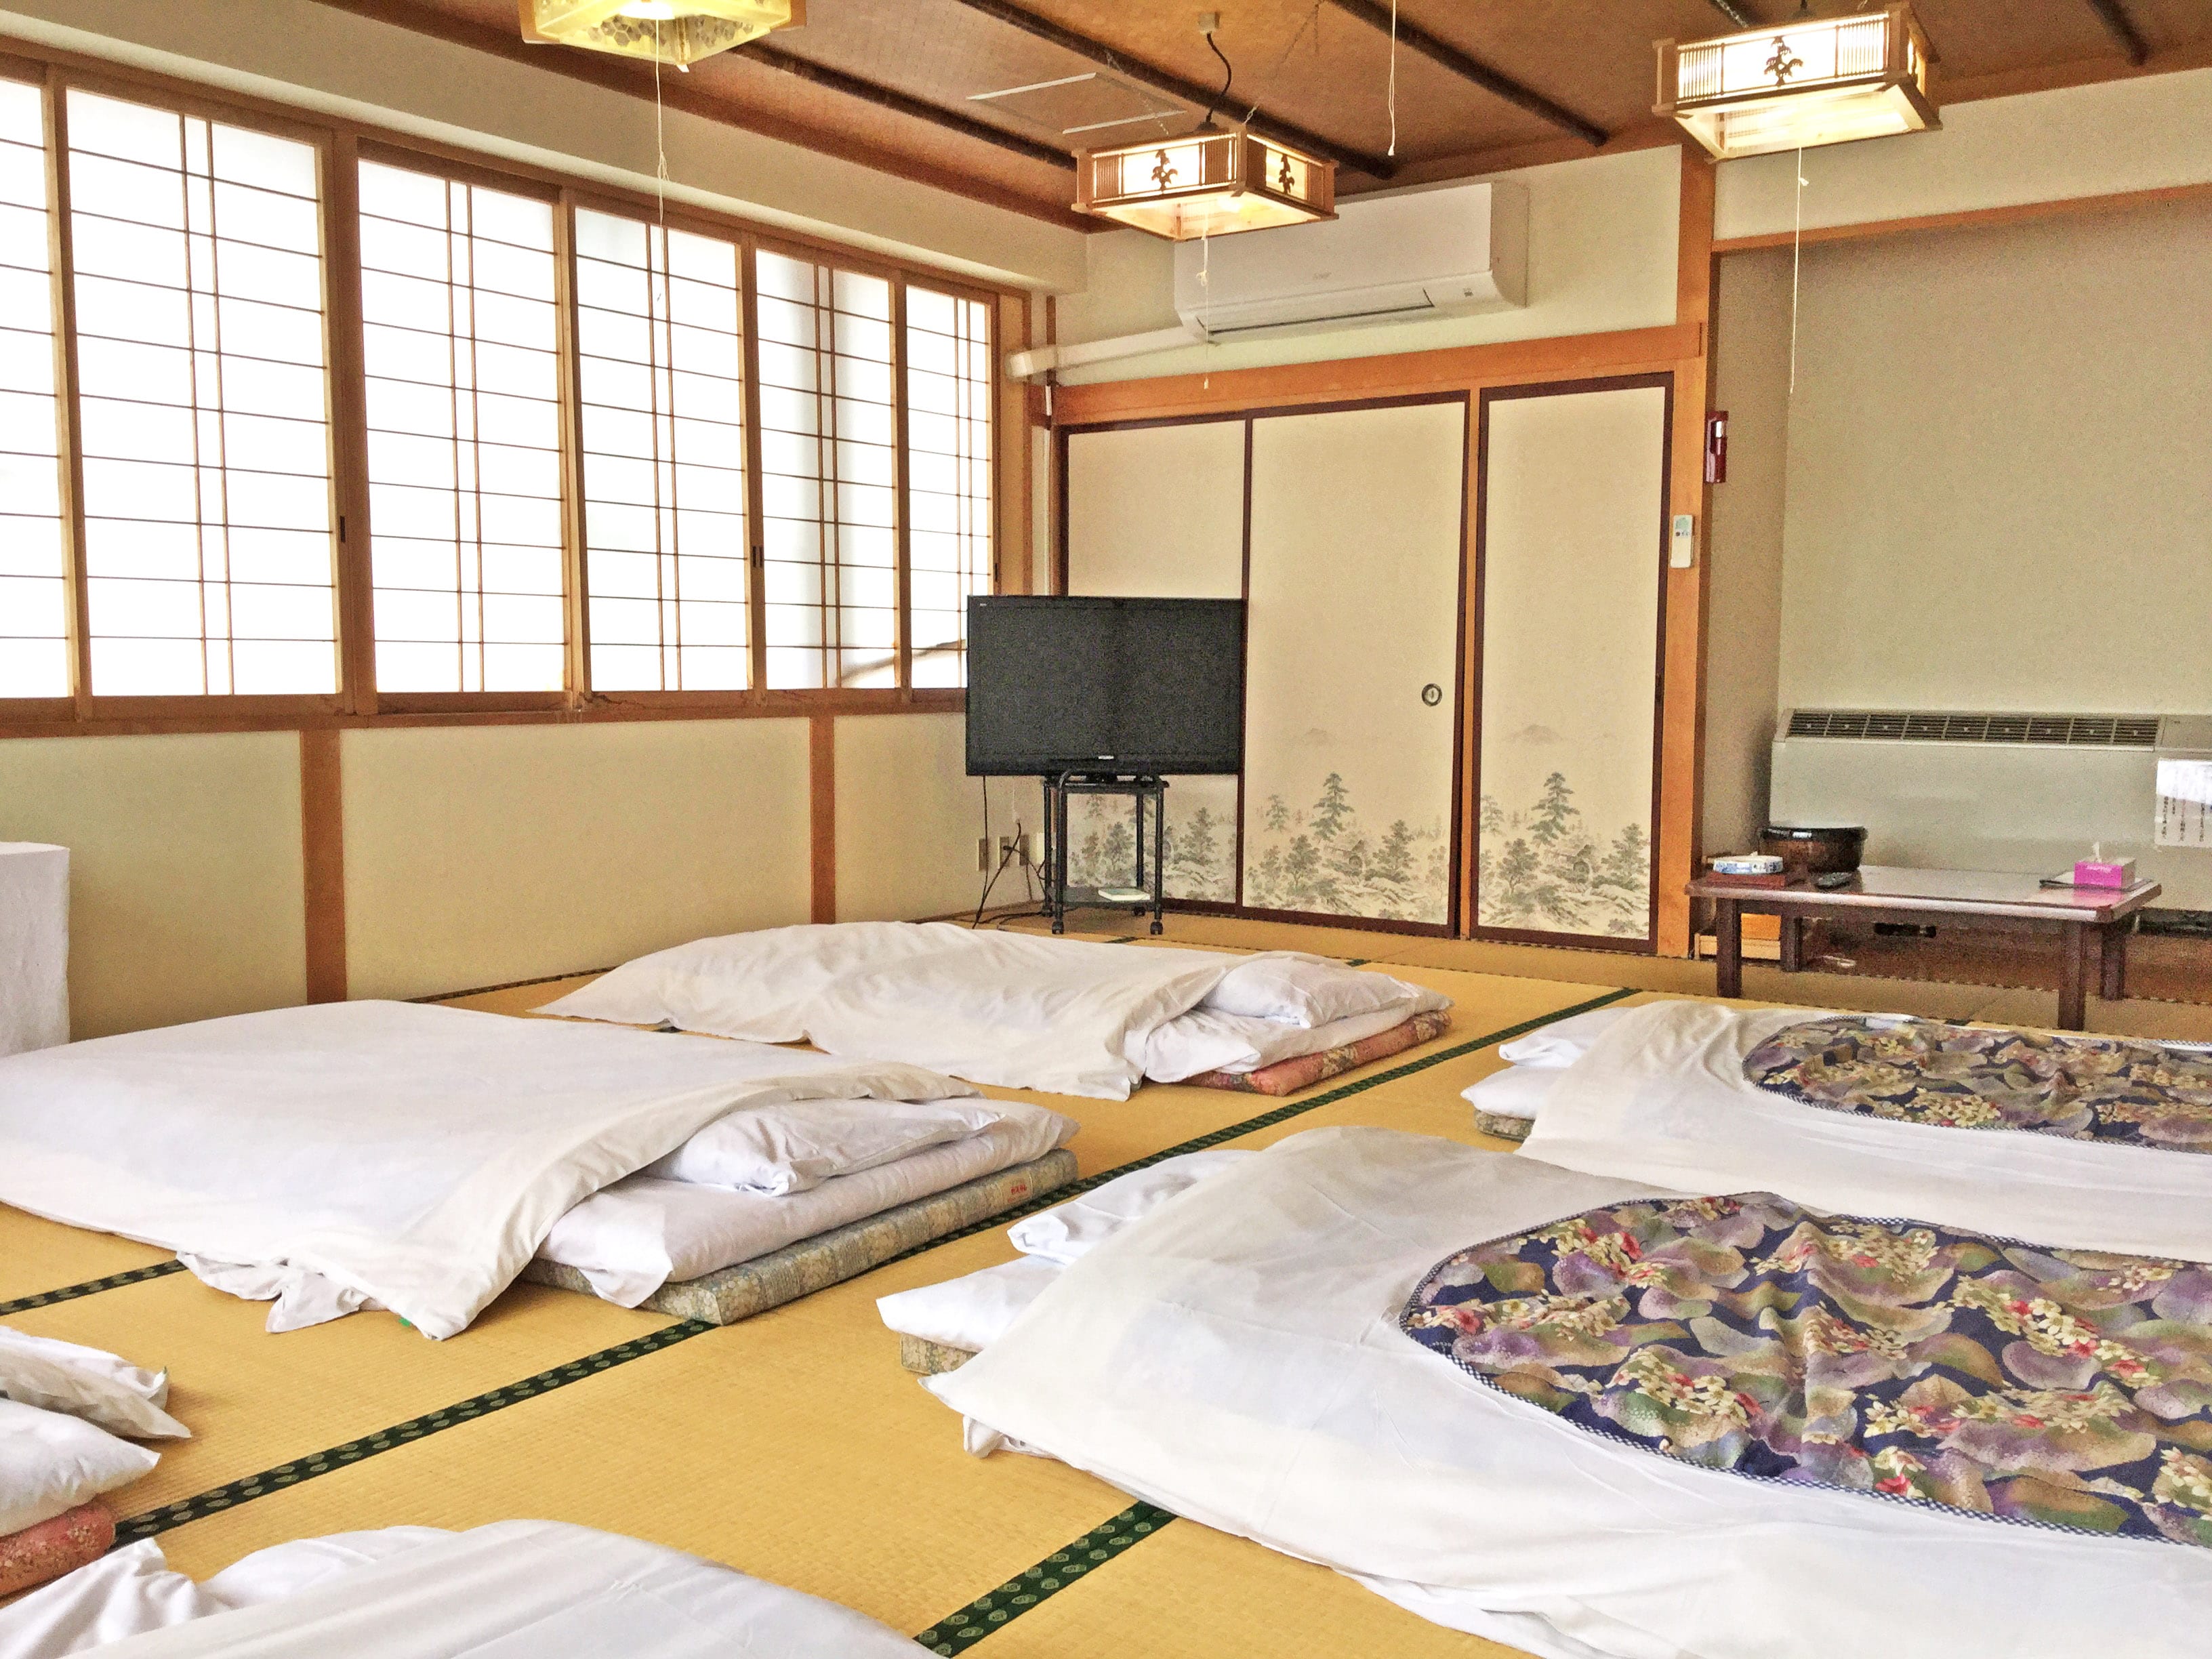 ห้องพักขนาดใหญ่พร้อมฟูกญี่ปุ่น